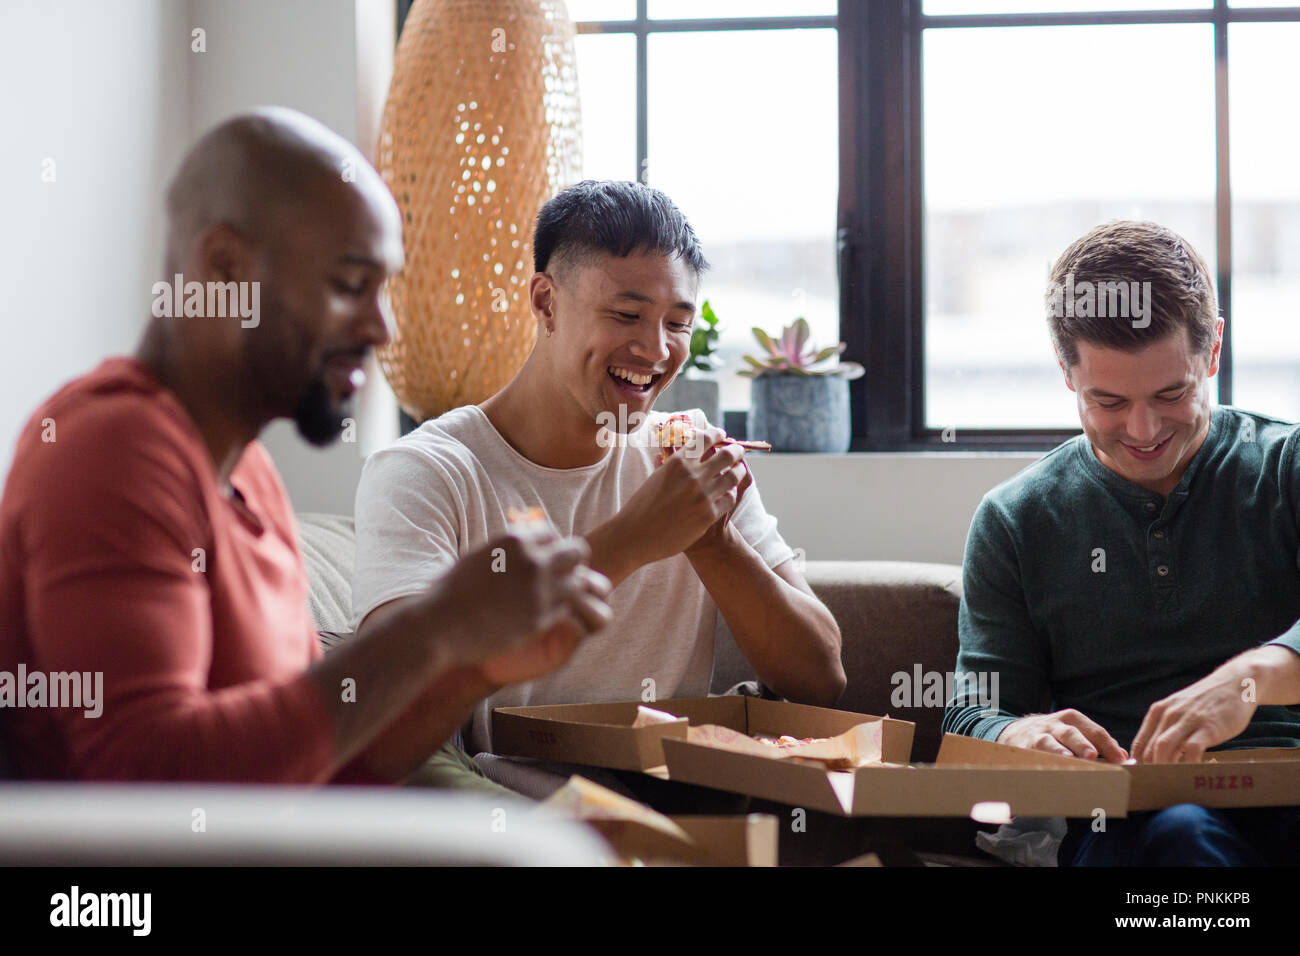 Männliche Freunde Essen takeout Pizza in einer Wohnung Stockfoto